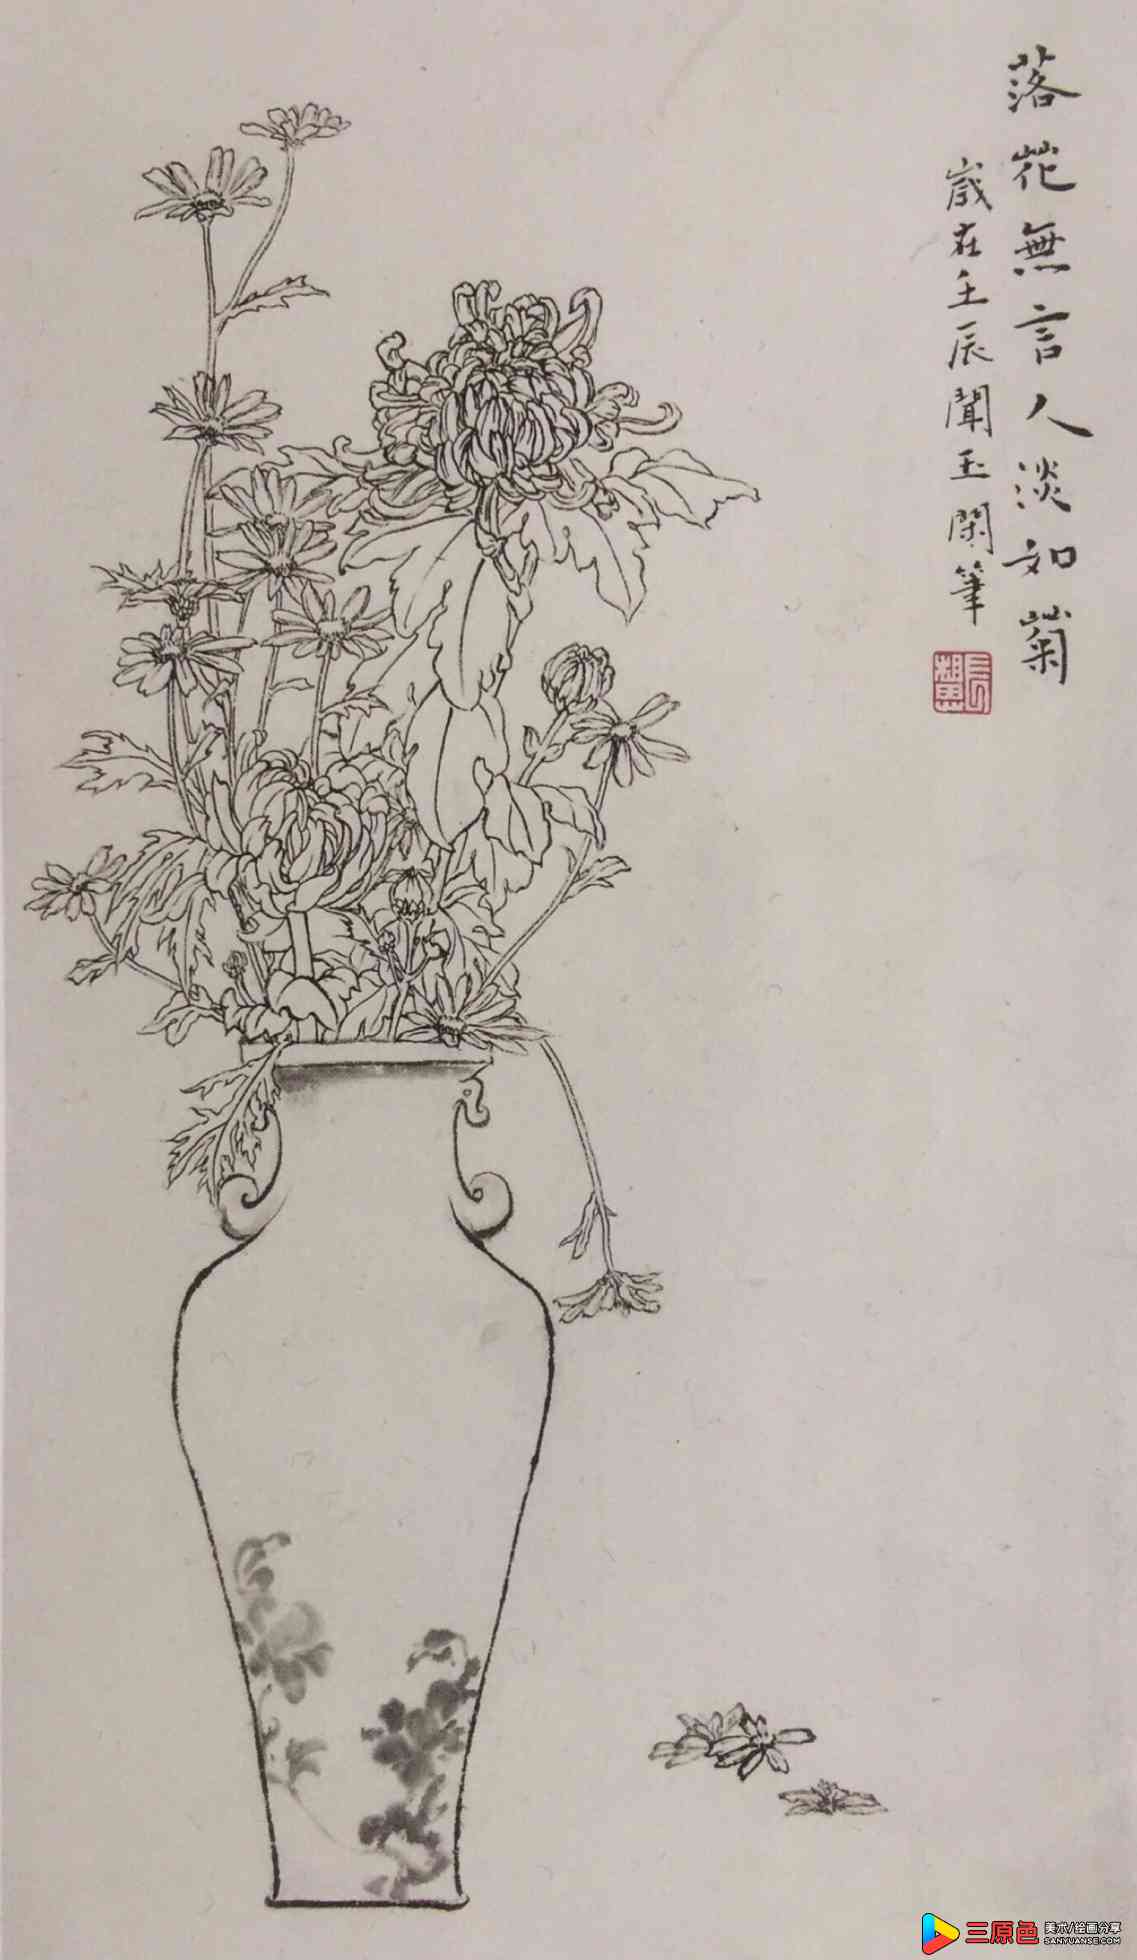 中国美术学院美术考级花鸟画考级九级(高级)示范图例。